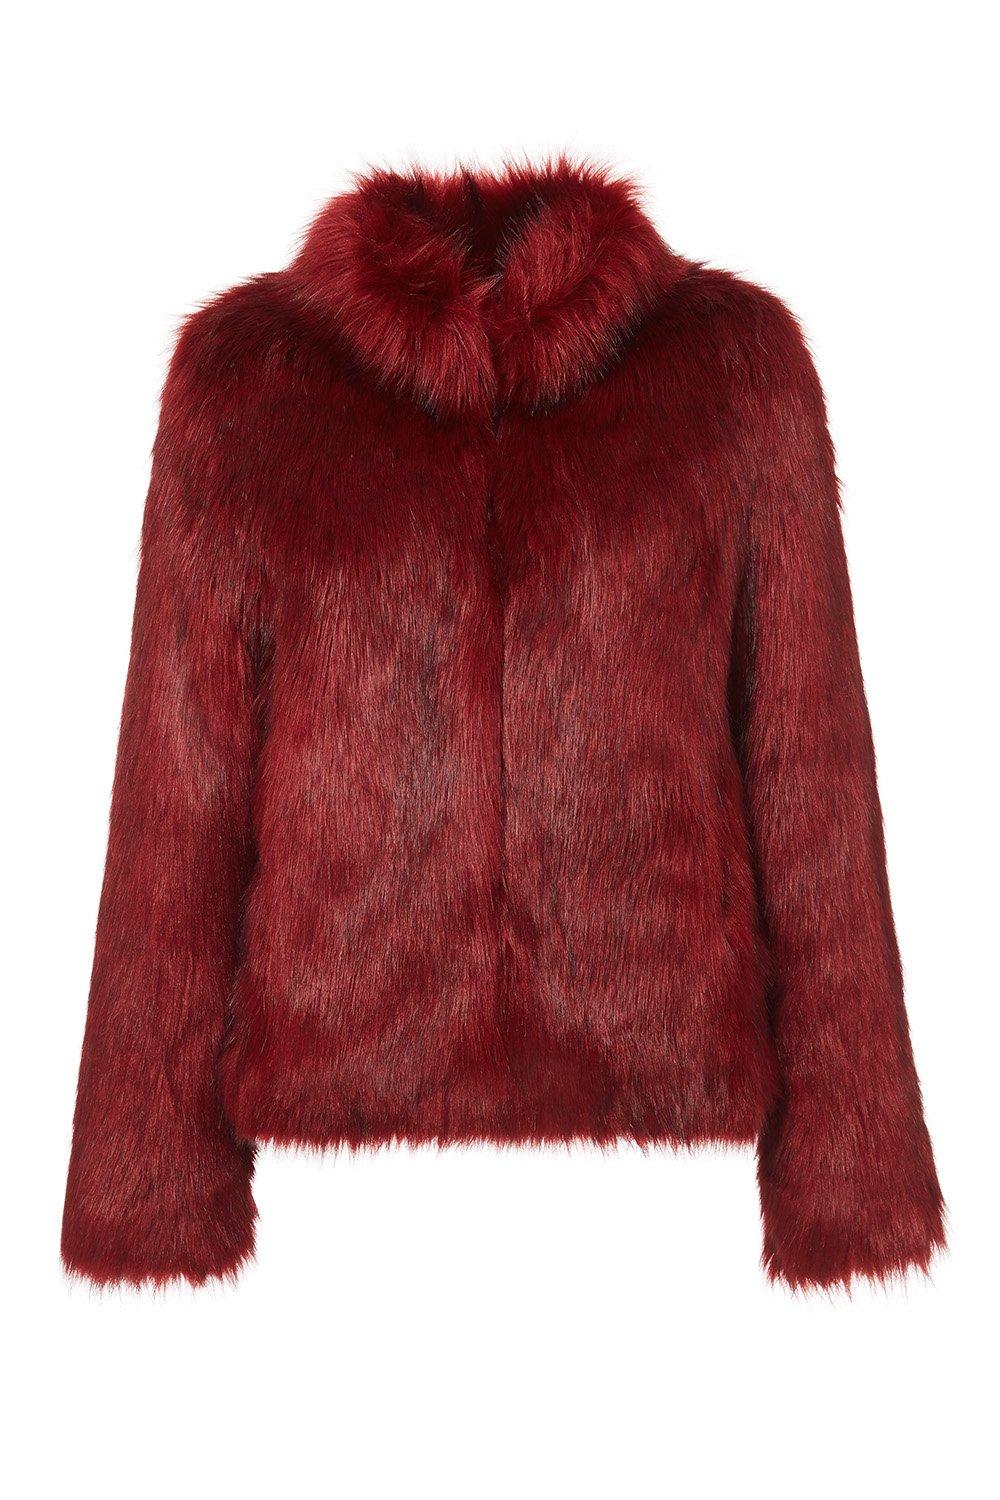 Unreal Fur Fur Delish Jacket - Lyst